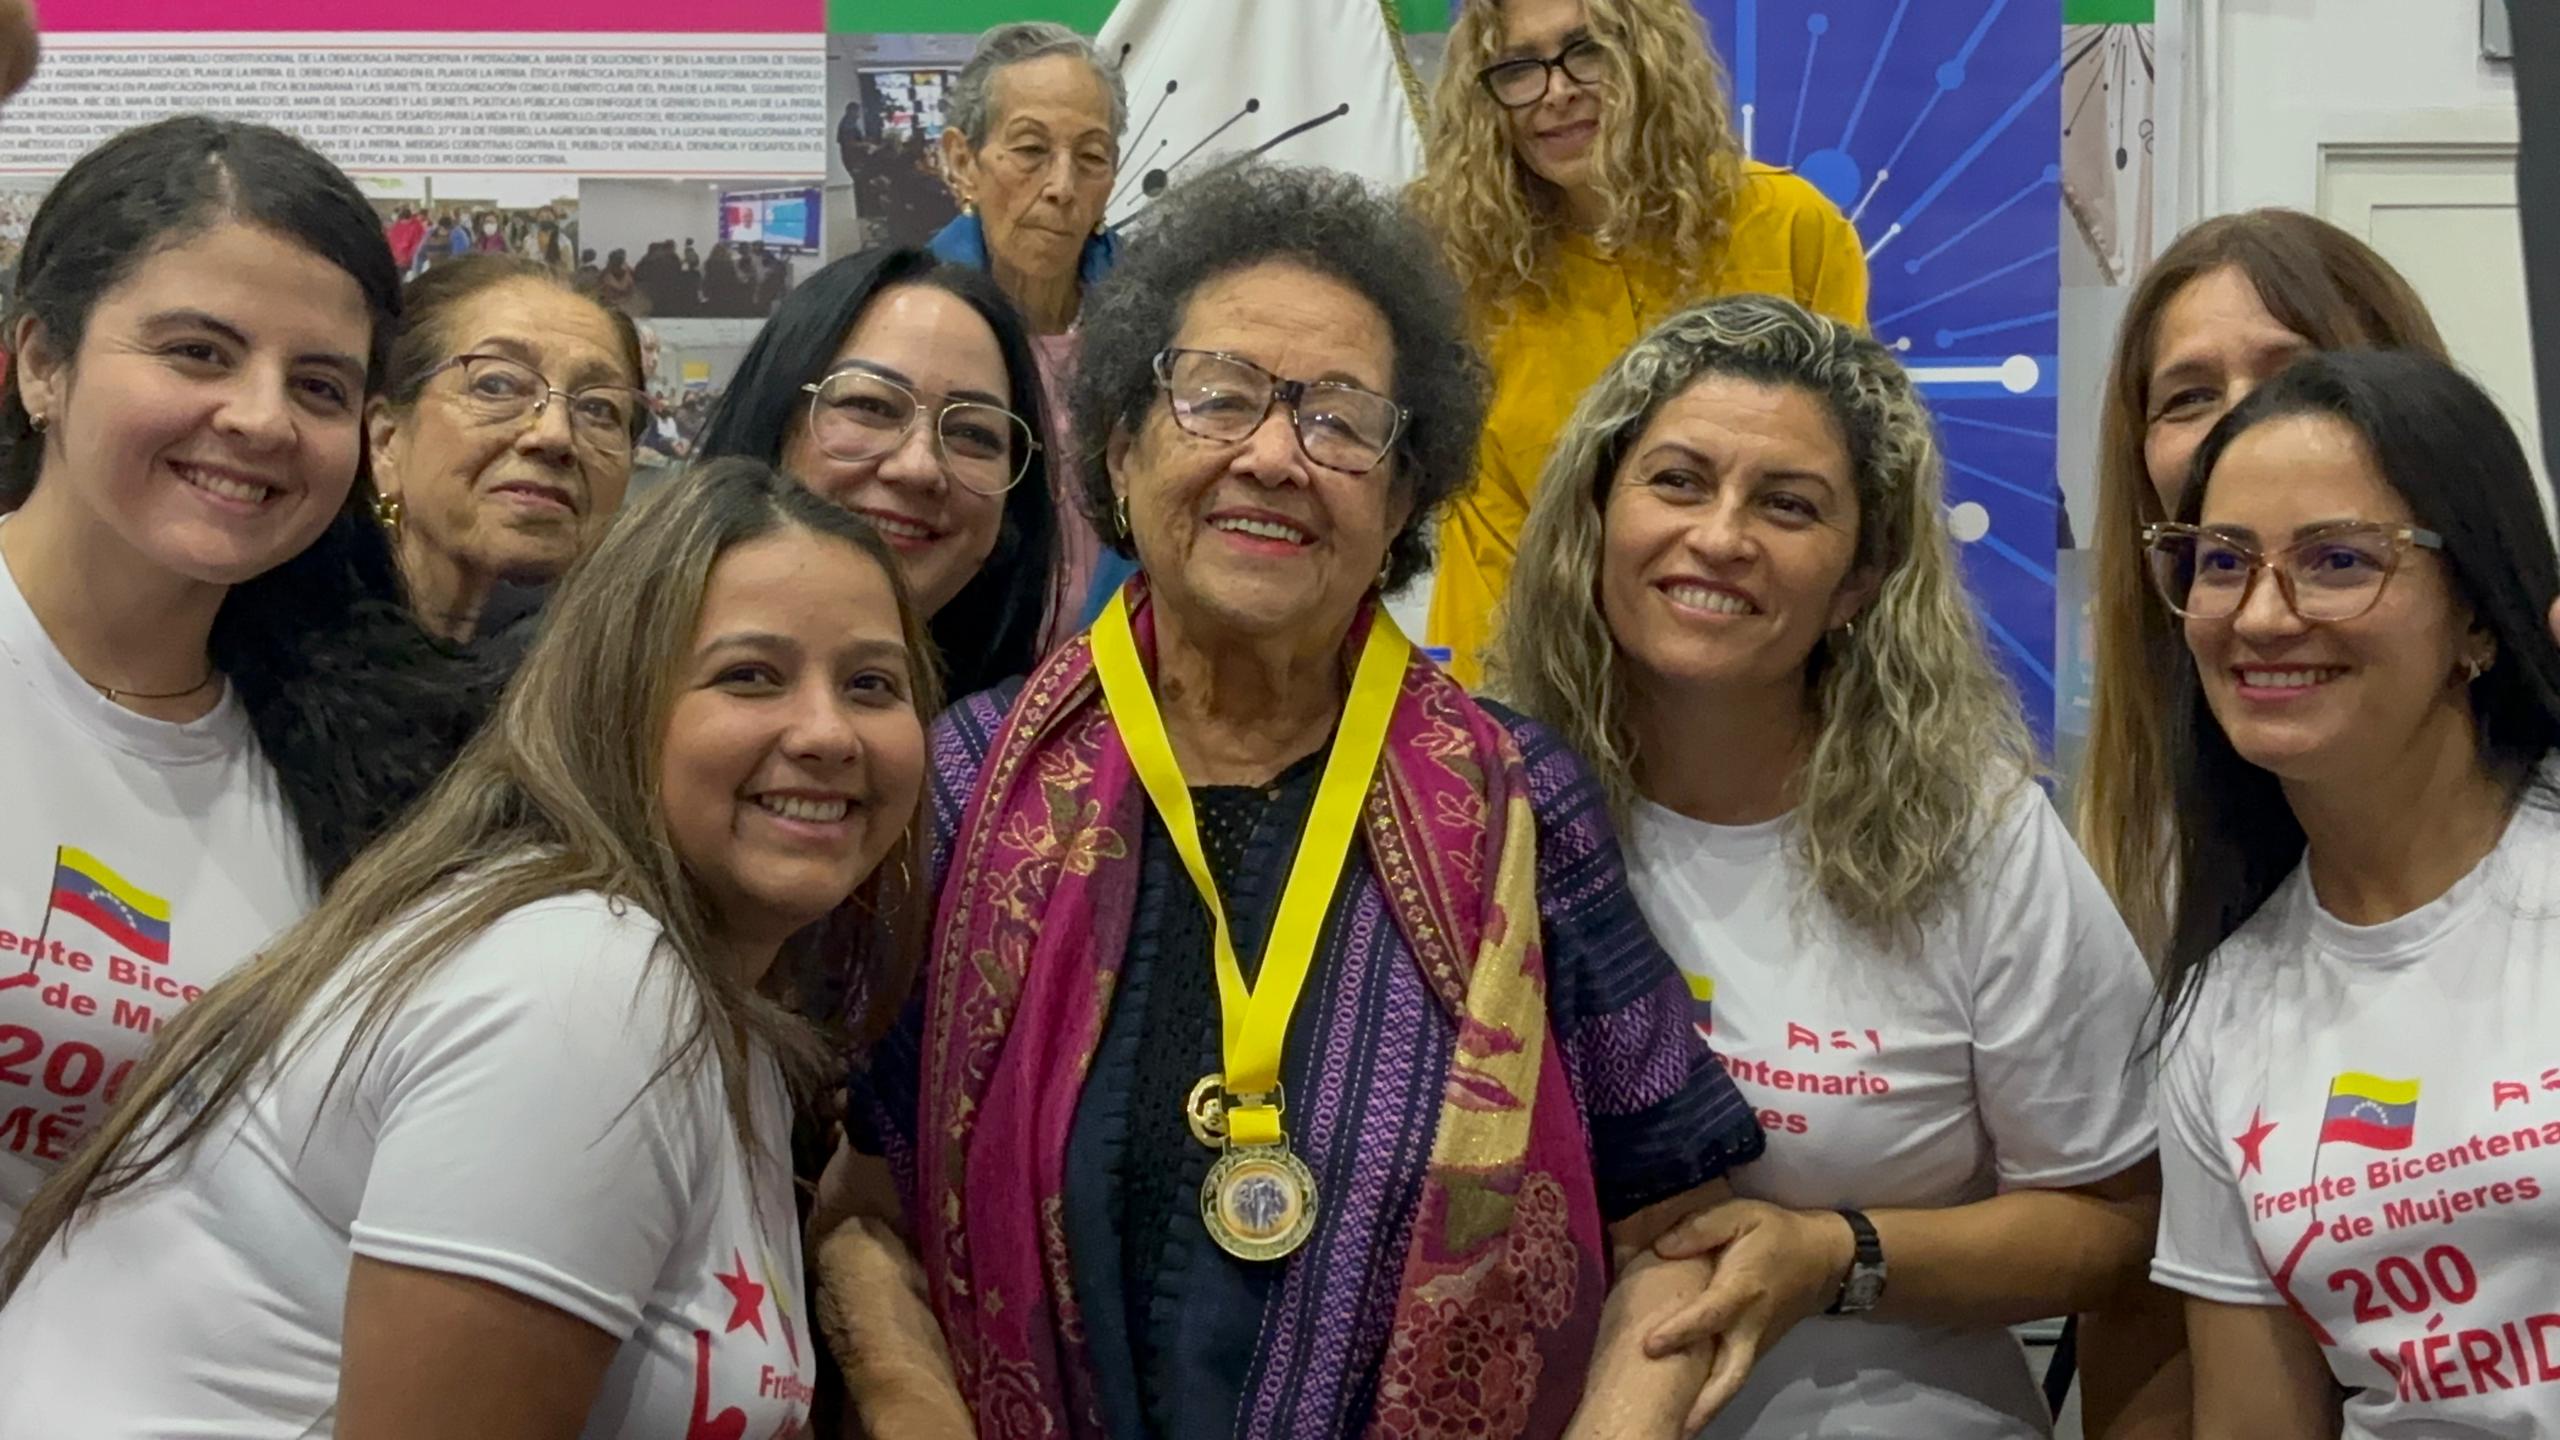 Lee más sobre el artículo Frente Bicentenario de Mujeres 200 rinde homenaje a María León